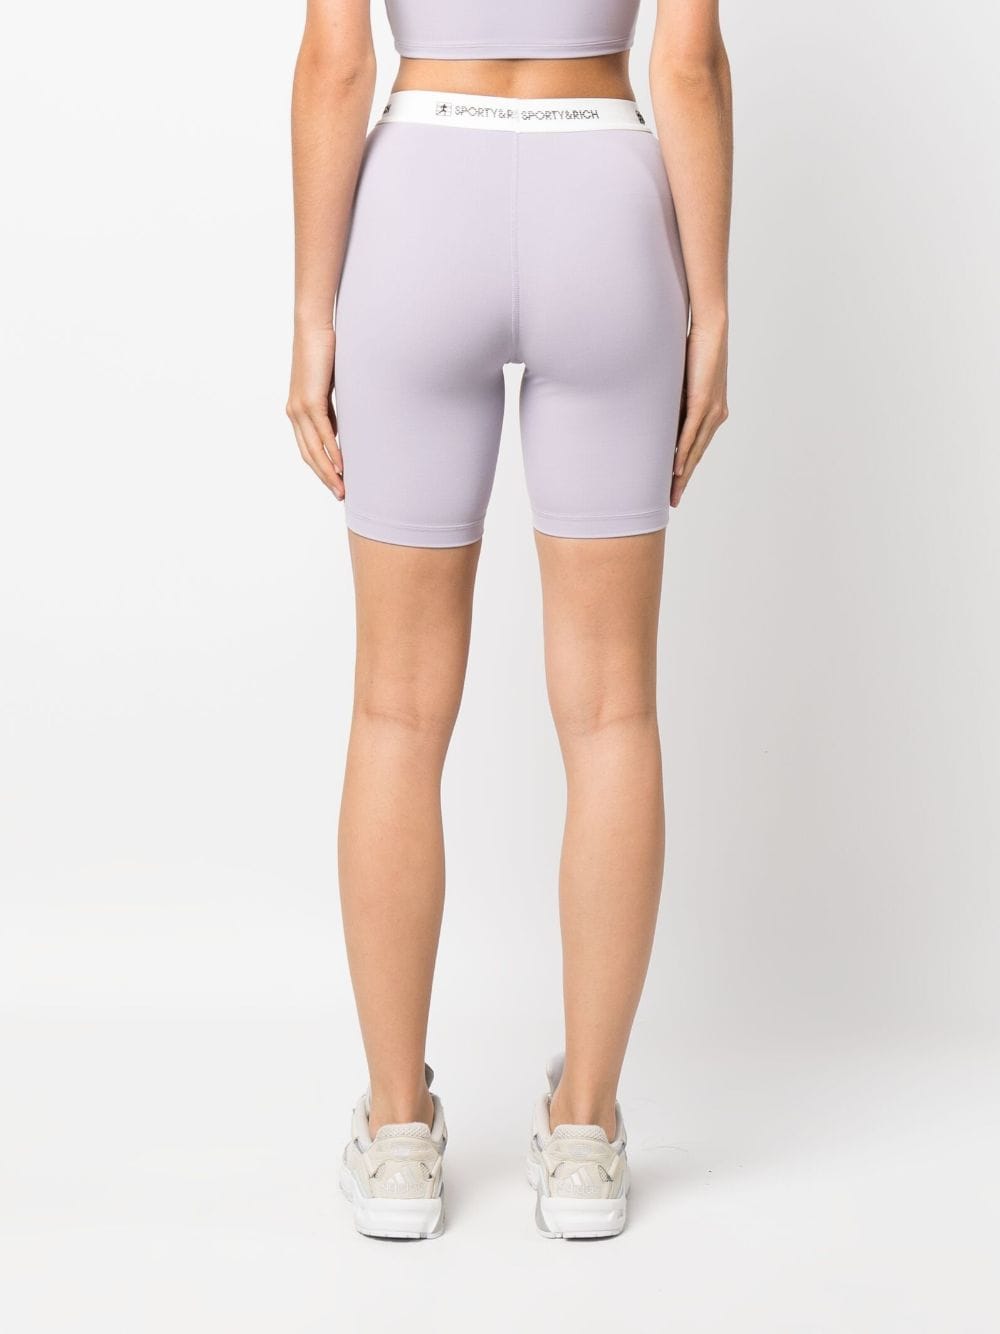 Shorts con banda logo in lilla -  donna SPORTY & RICH | SH835LI